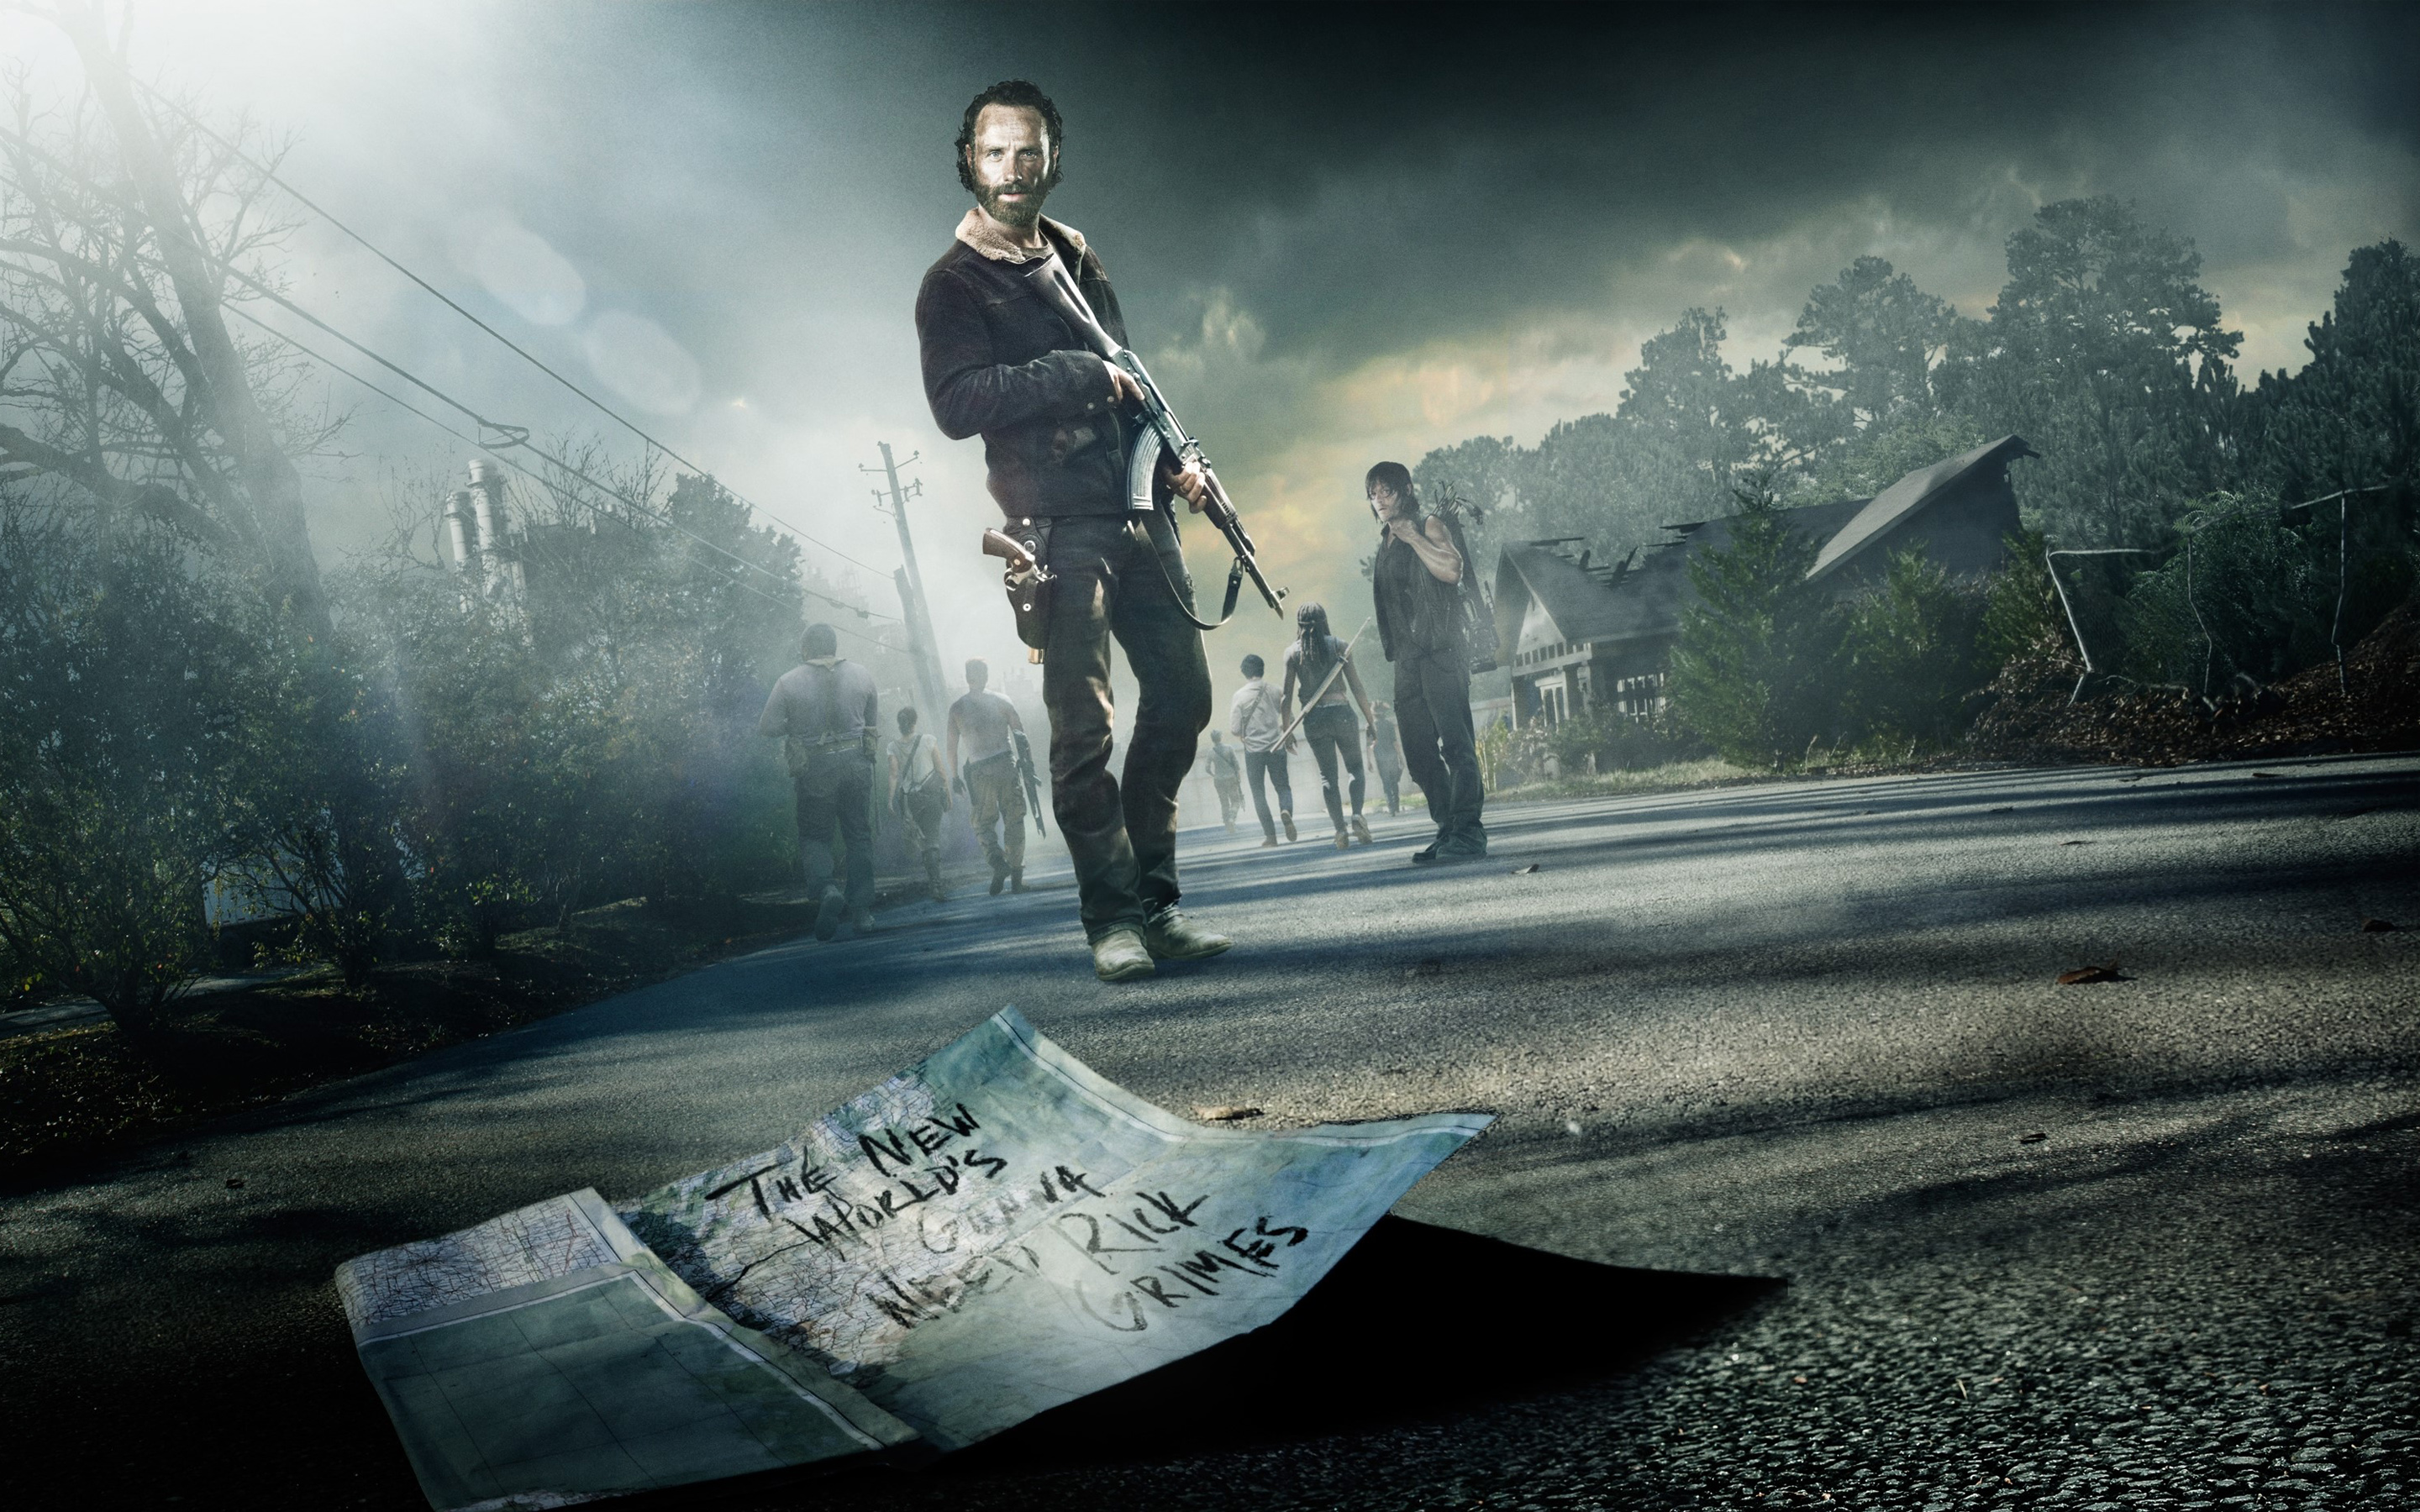  Walking Dead Season 5 Wallpaper   HD Wallpapers Ultra HD Wallpapers